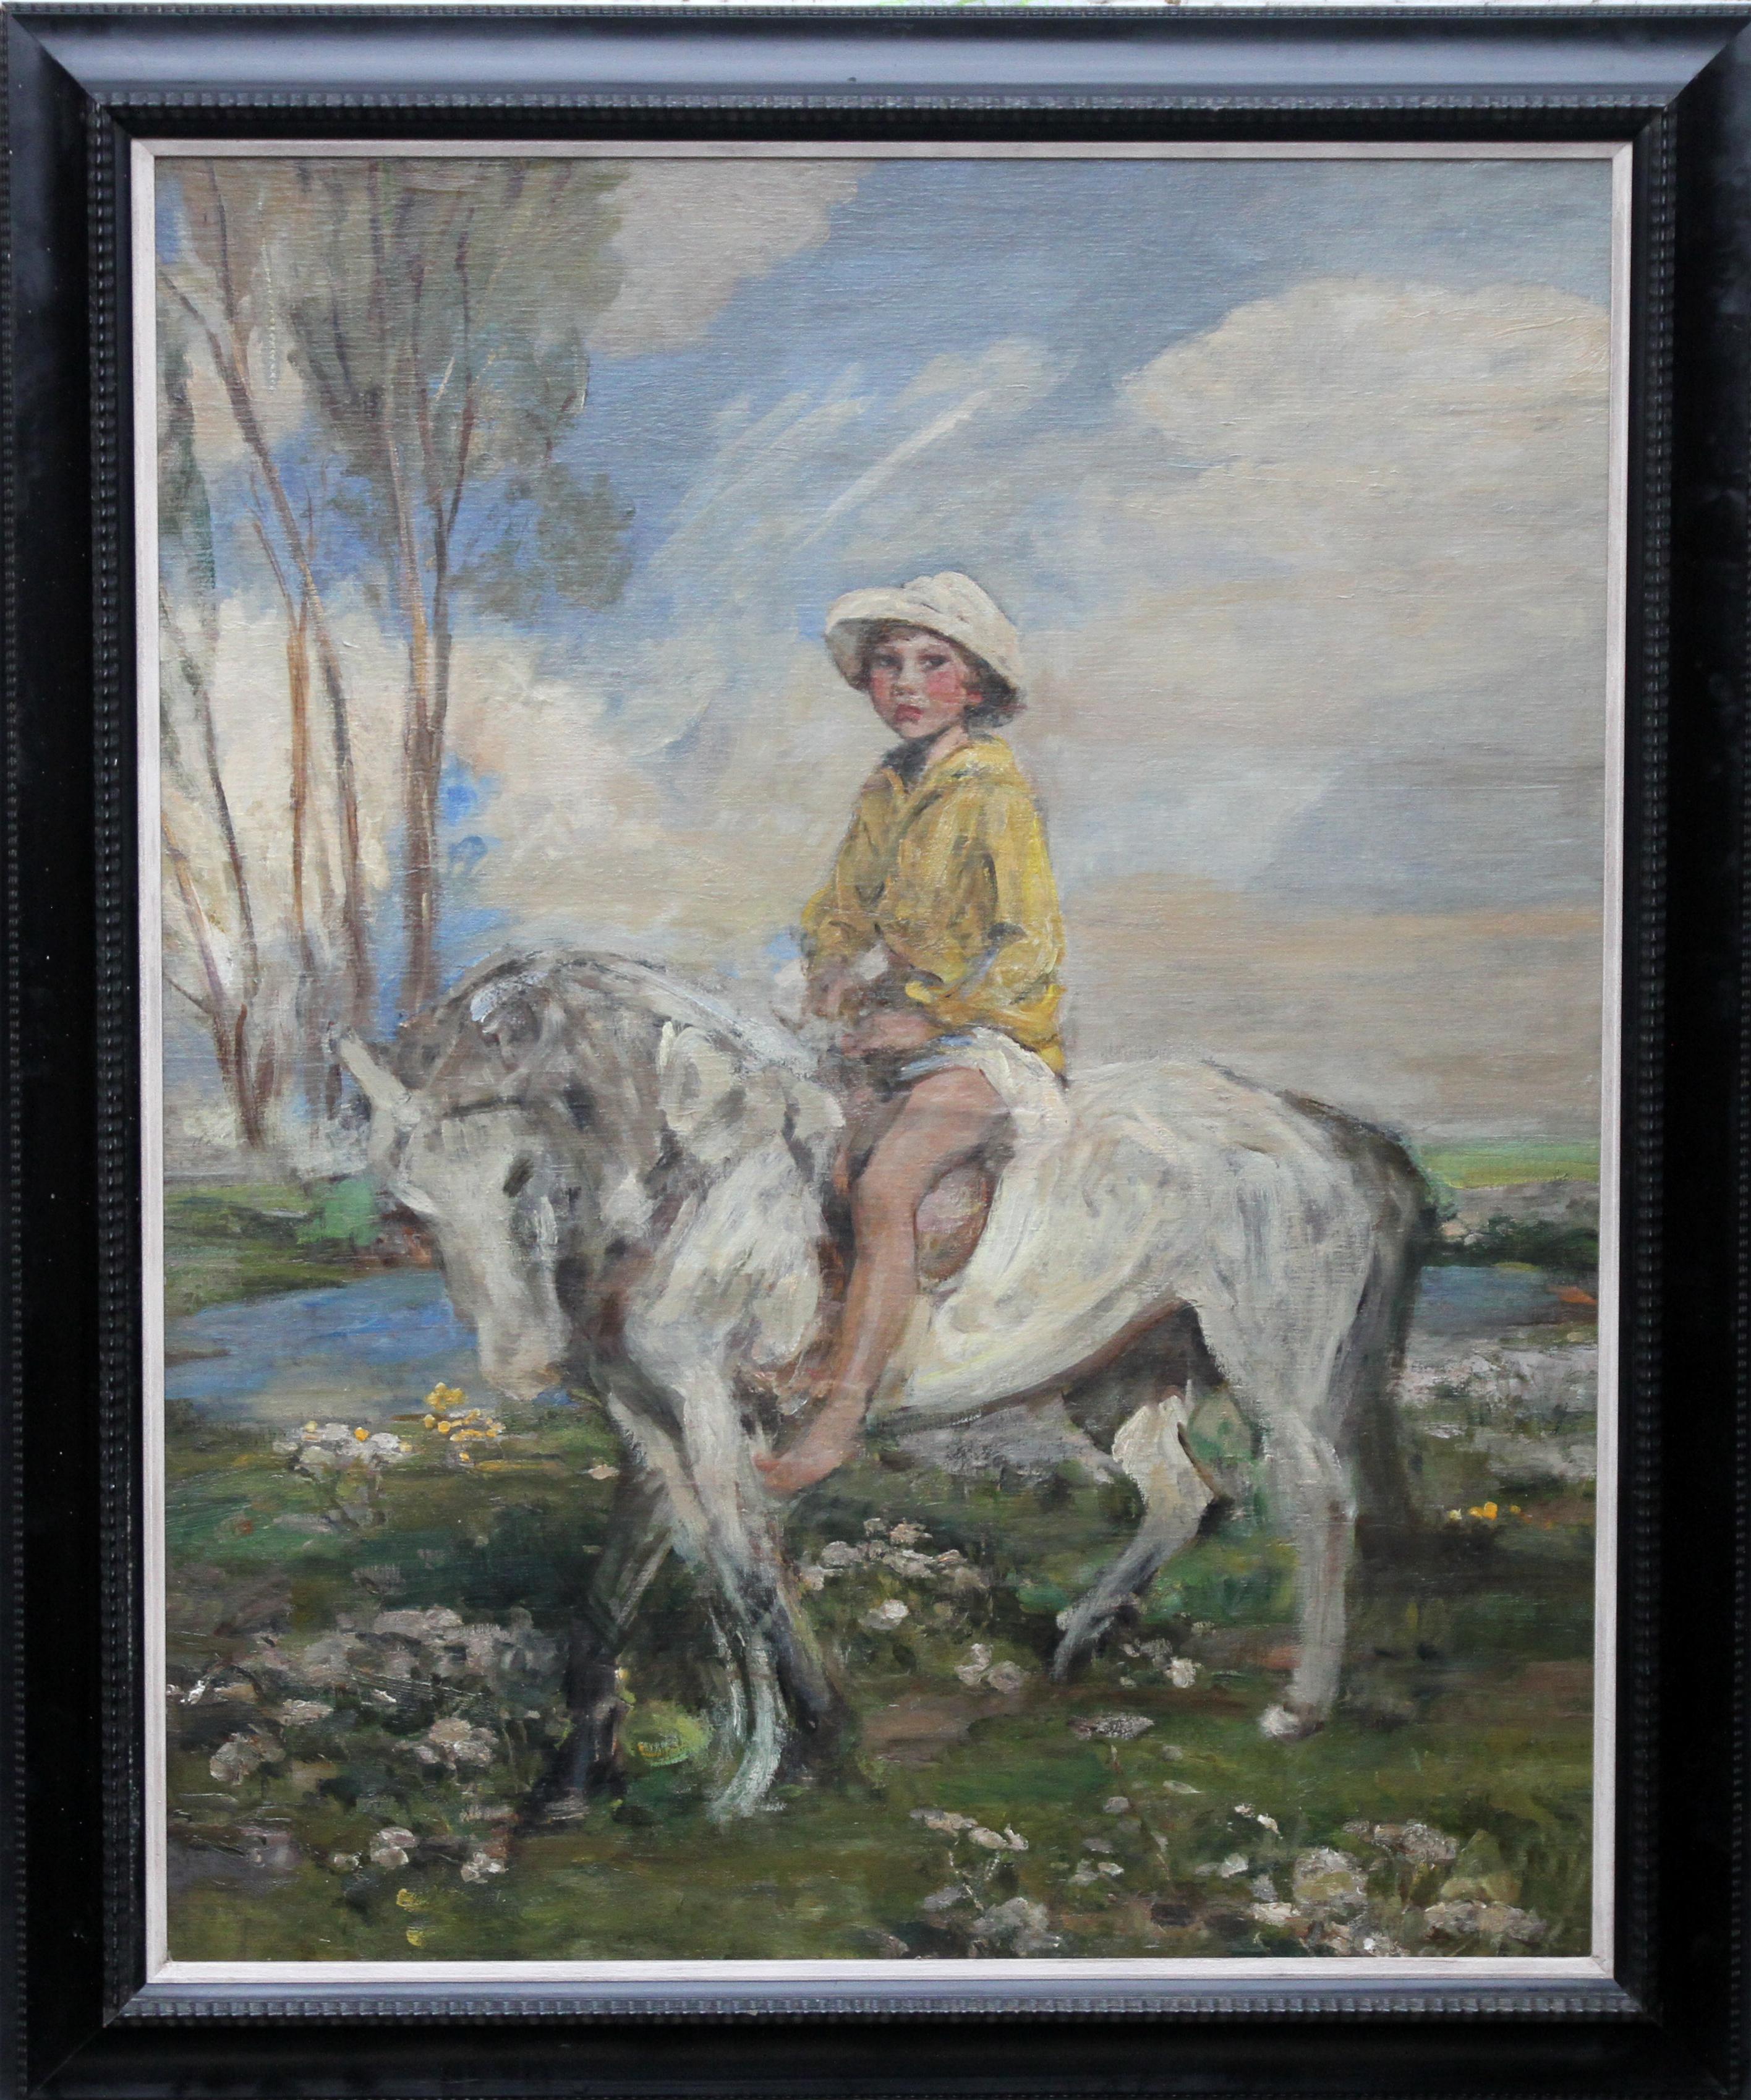 James Jebusa Shannon Portrait Painting – Porträt des Künstlers Grandson – edwardianisches impressionistisches Ölgemälde mit Pferdemotiven